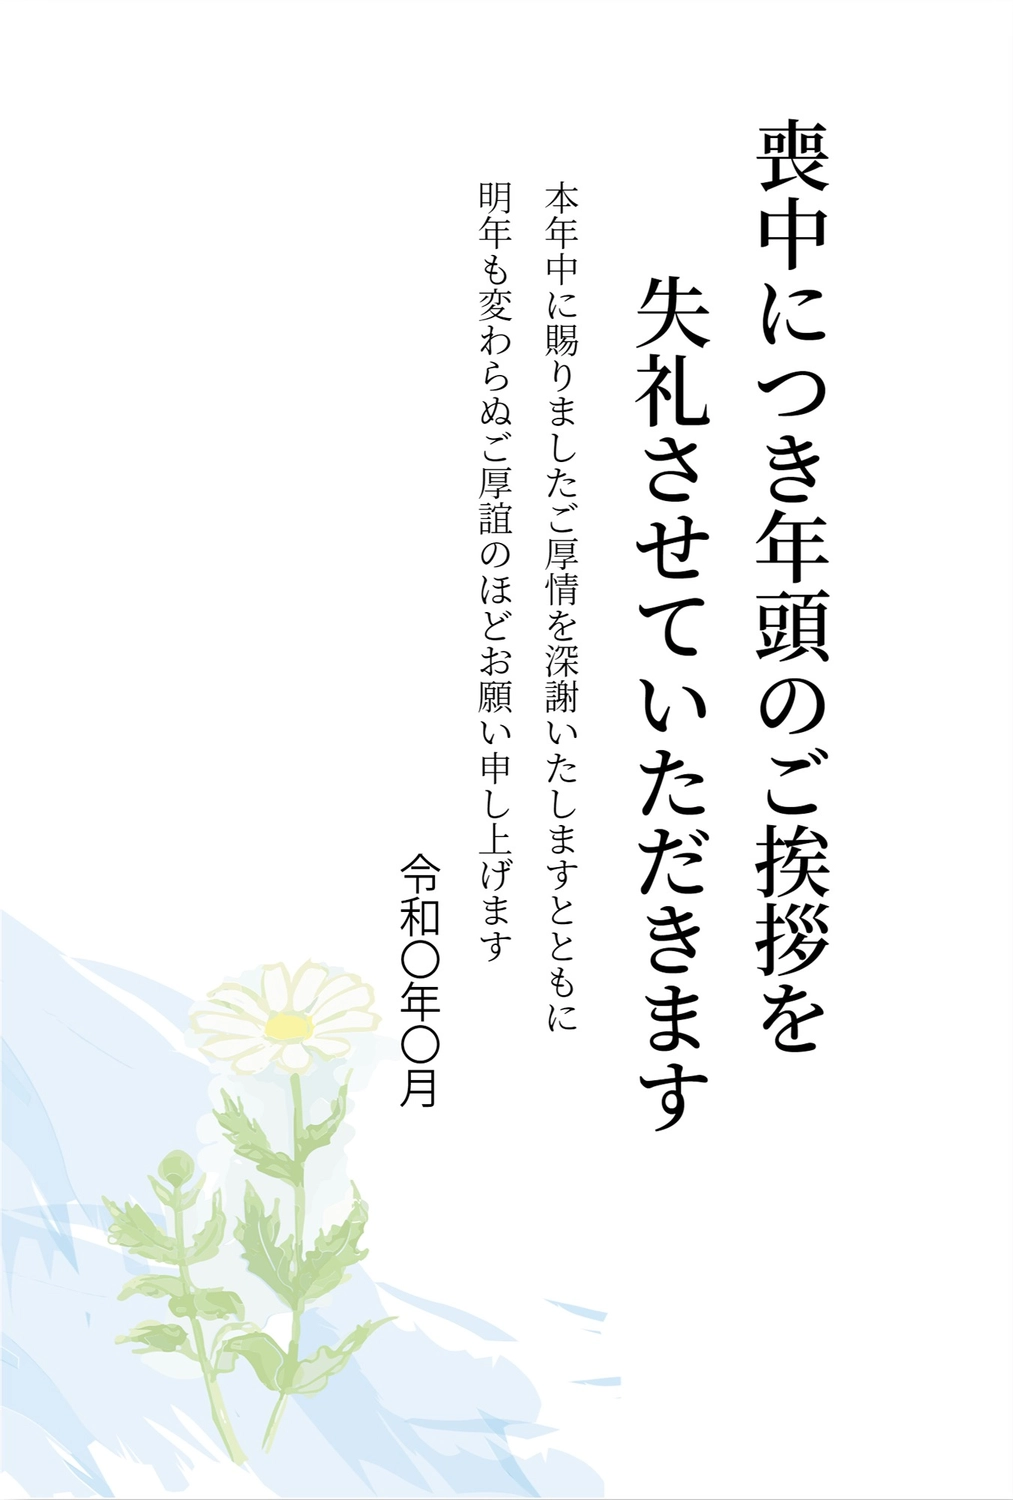 白花の喪中はがき, White flower, death, condolence, Mourning Postcard template